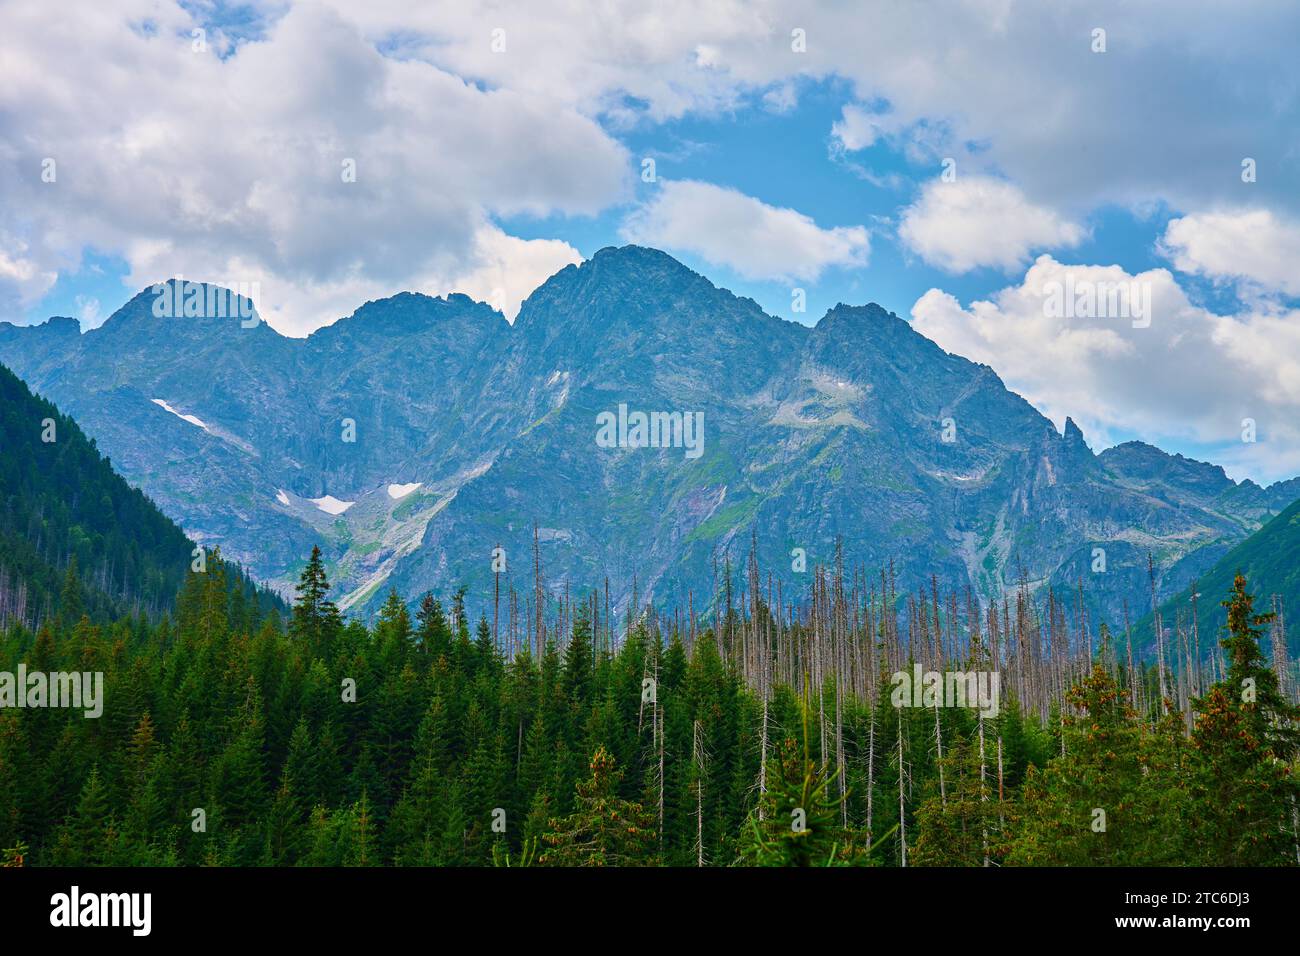 Vue imprenable sur la chaîne de montagnes près des arbres forestiers le jour de l'été. Parc national des Tatras en Pologne Banque D'Images